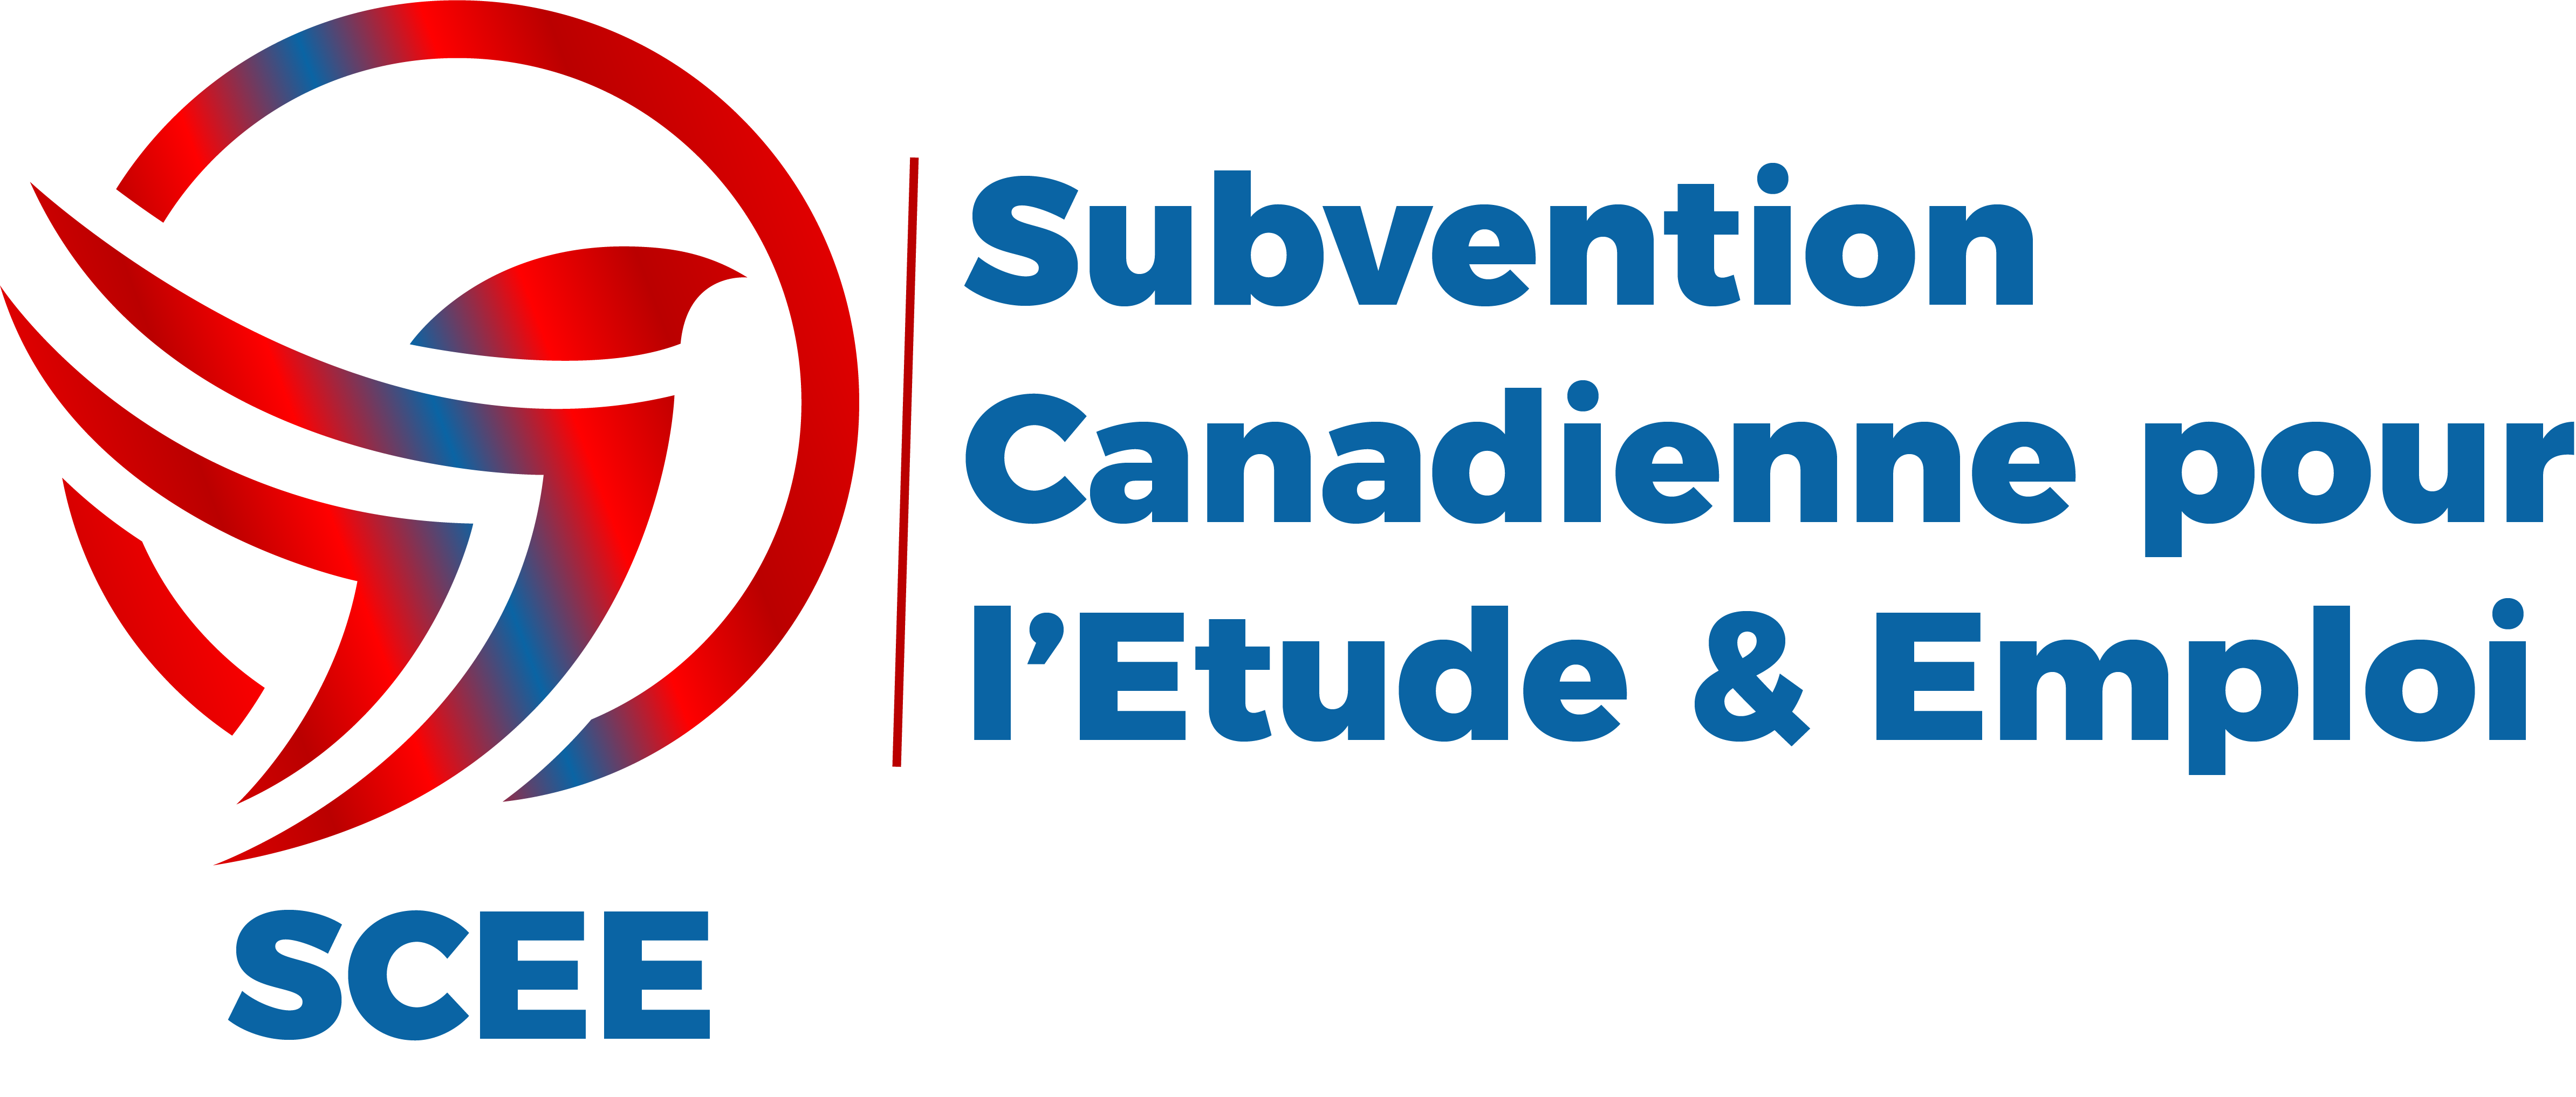 Subvention Canadienne pour l'Etude & Emploi